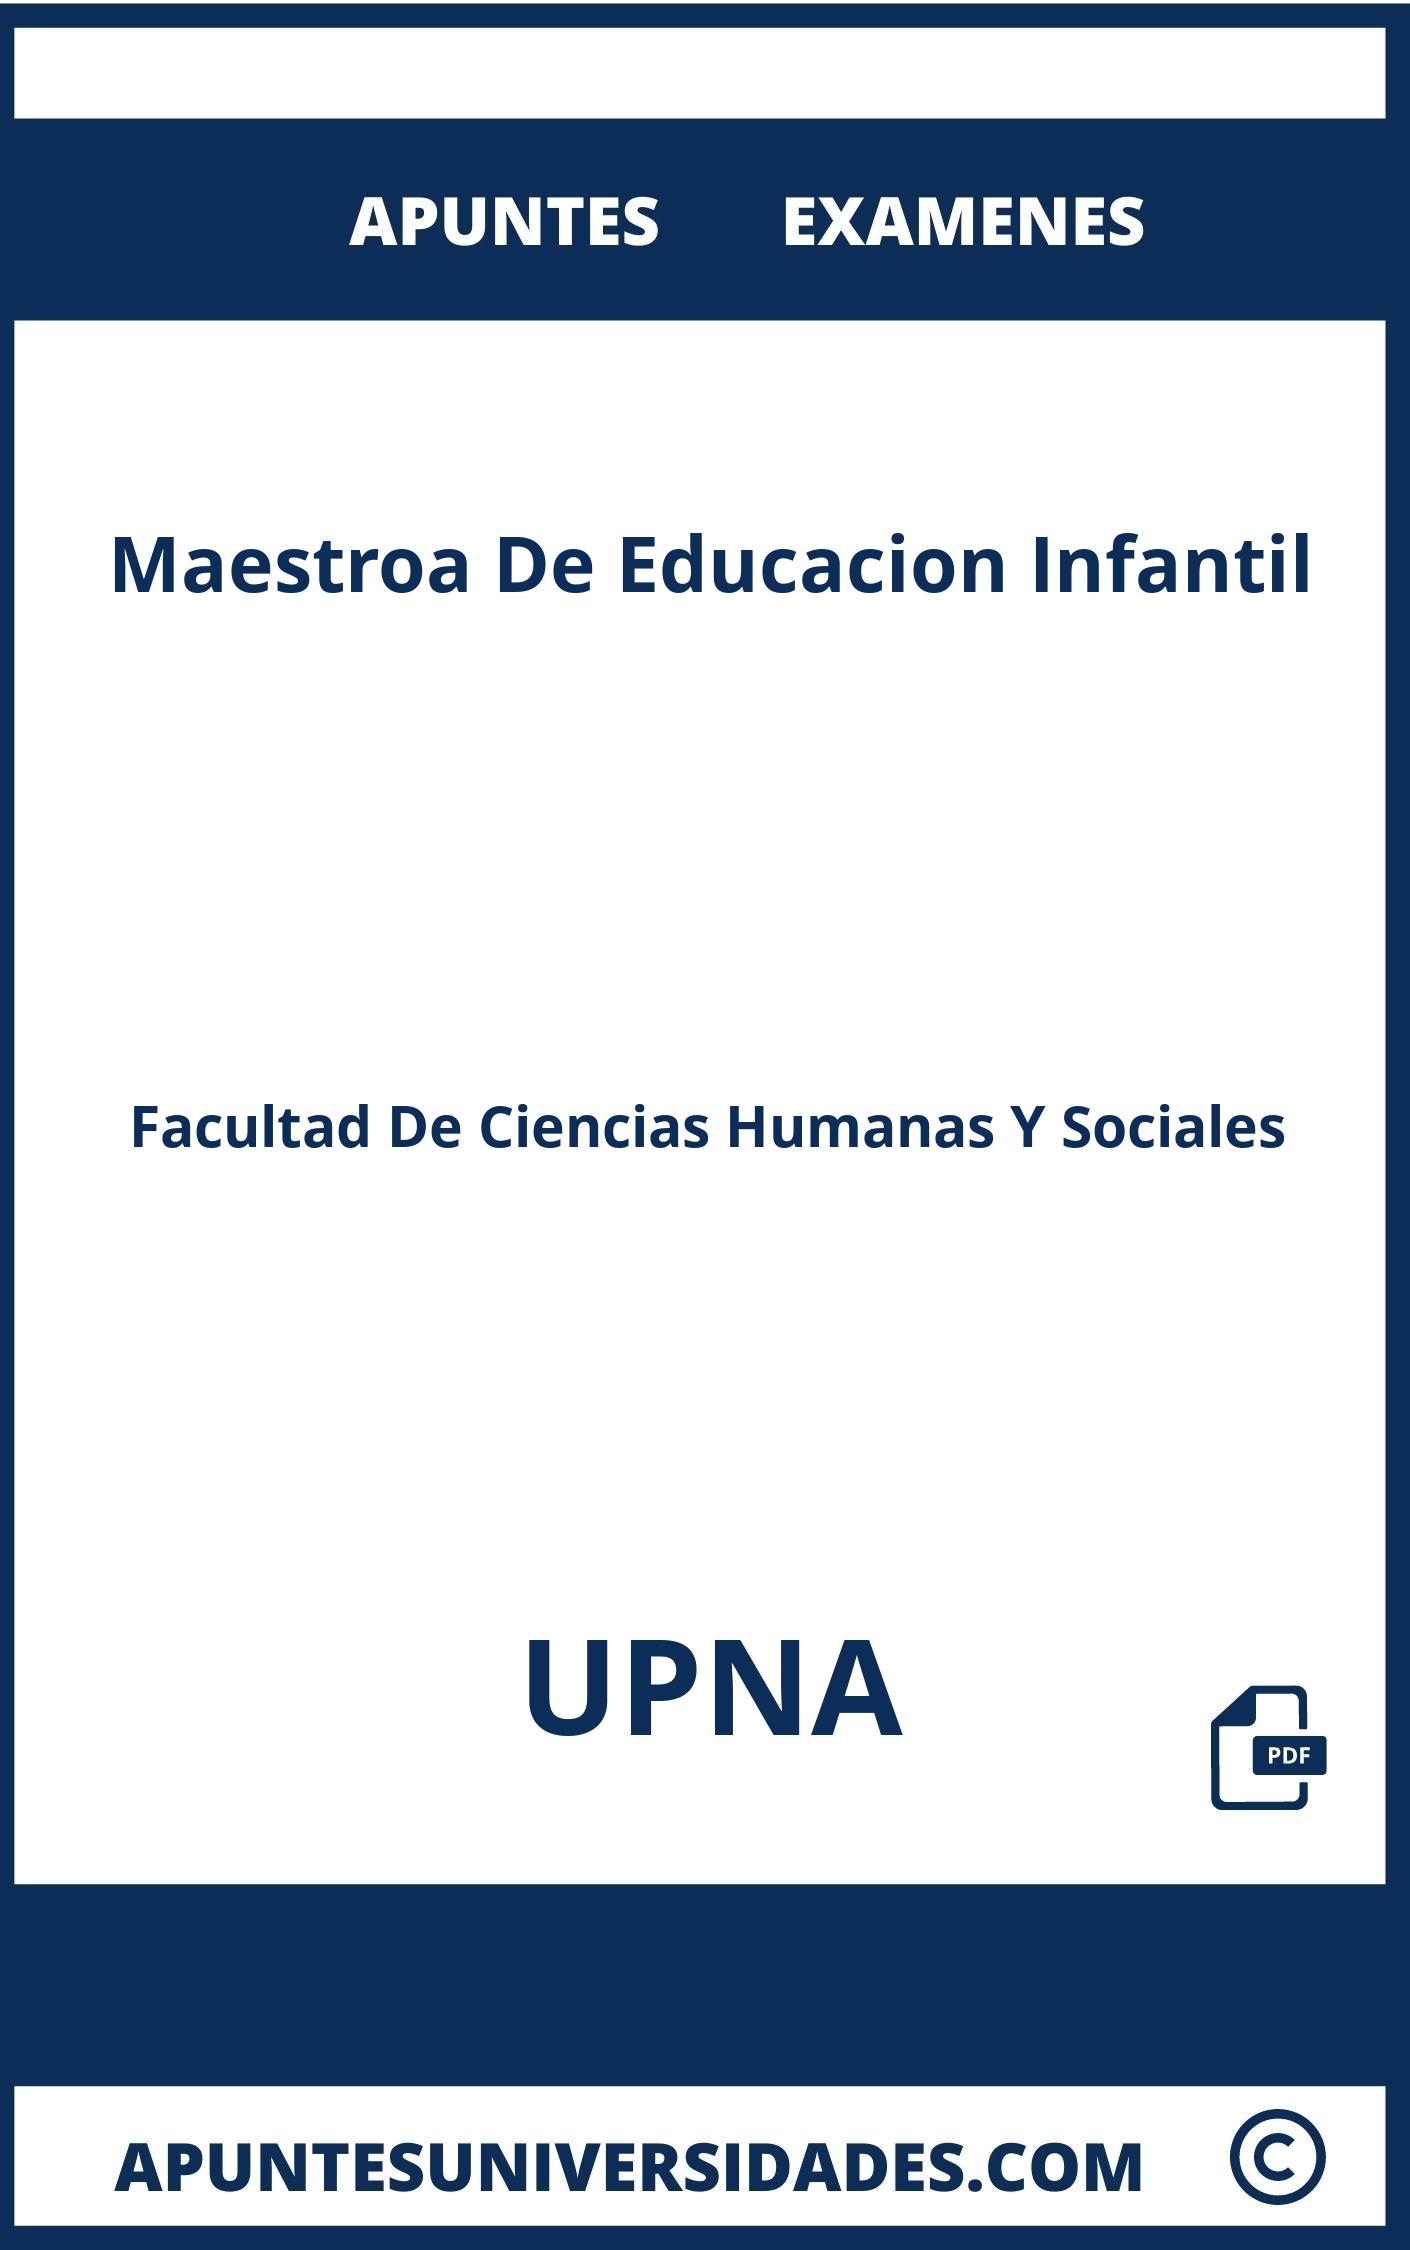 Apuntes y Examenes Maestroa De Educacion Infantil UPNA